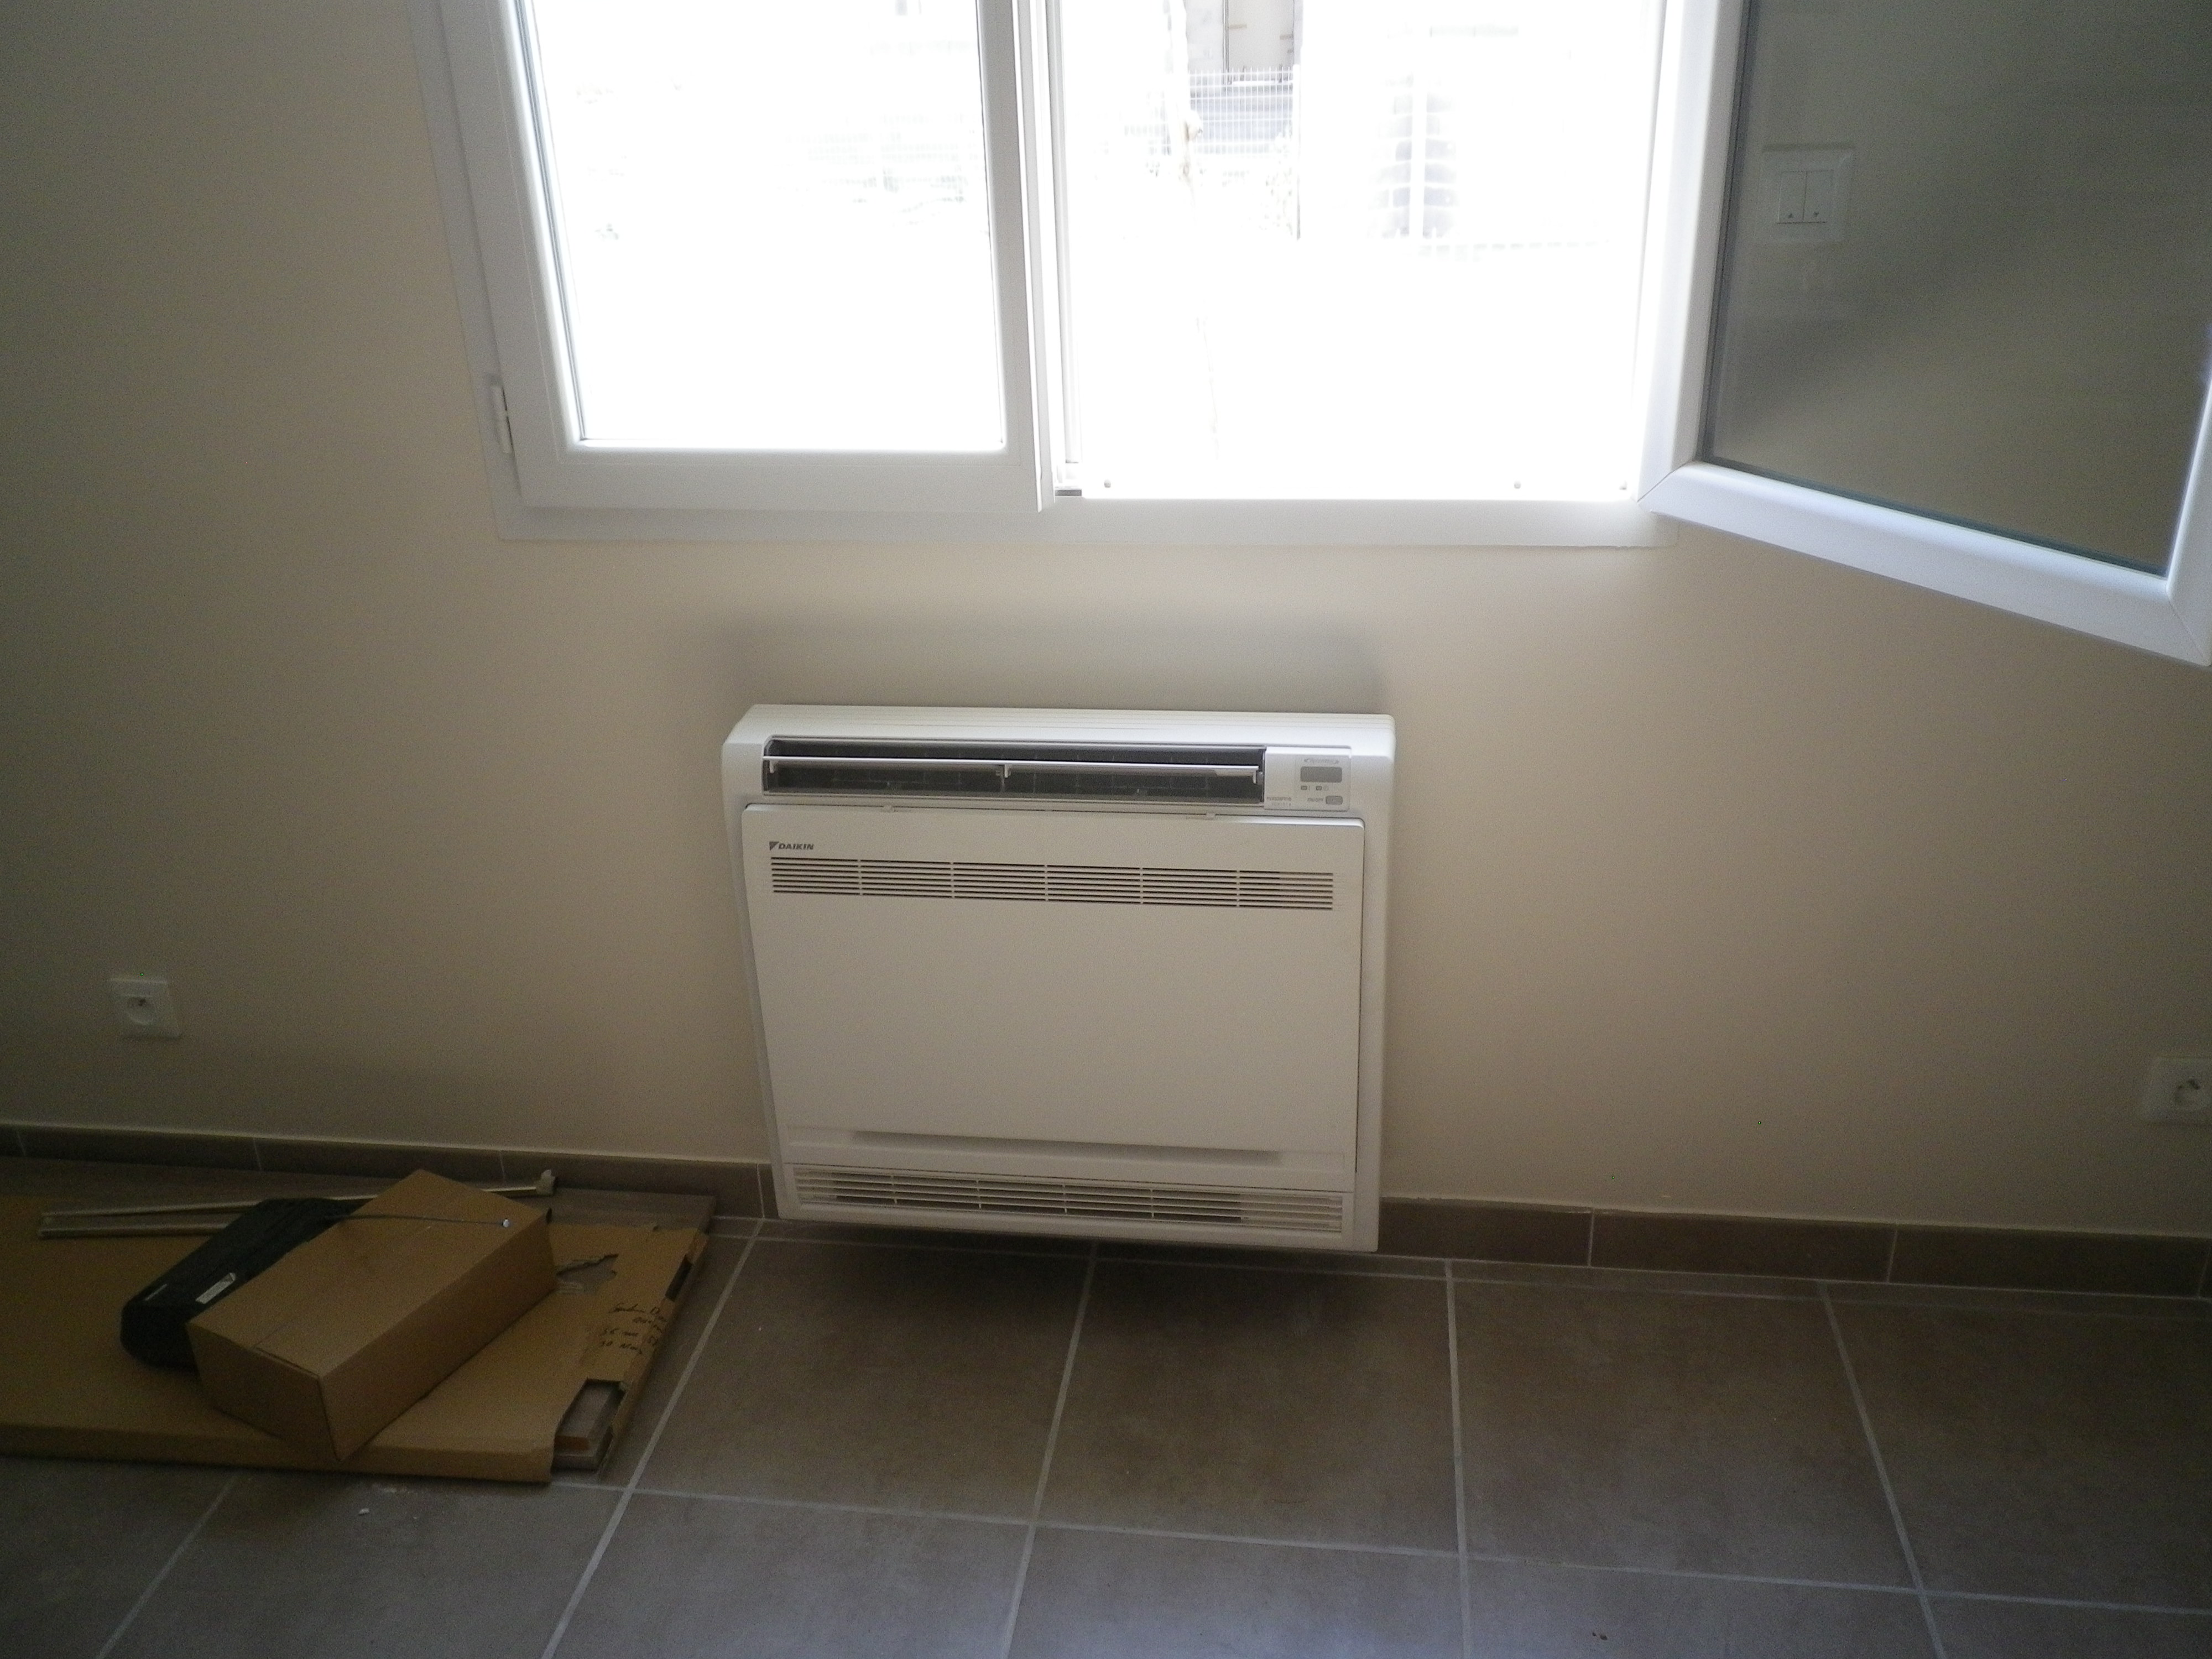 Installation de climatisation réversible à Vauvert (unité intérieure sous forme de console)